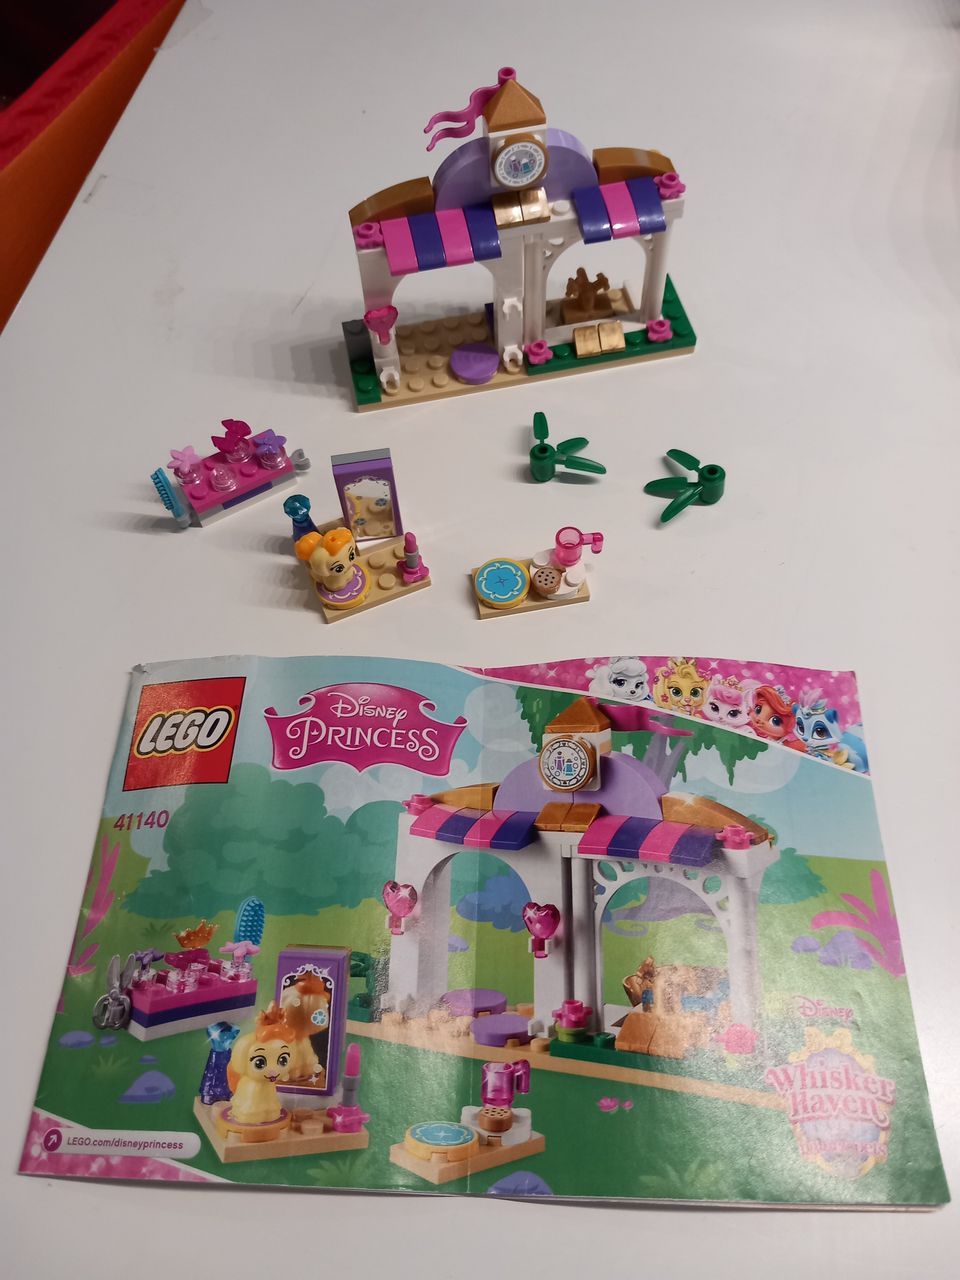 Lego Disney Princess 41140